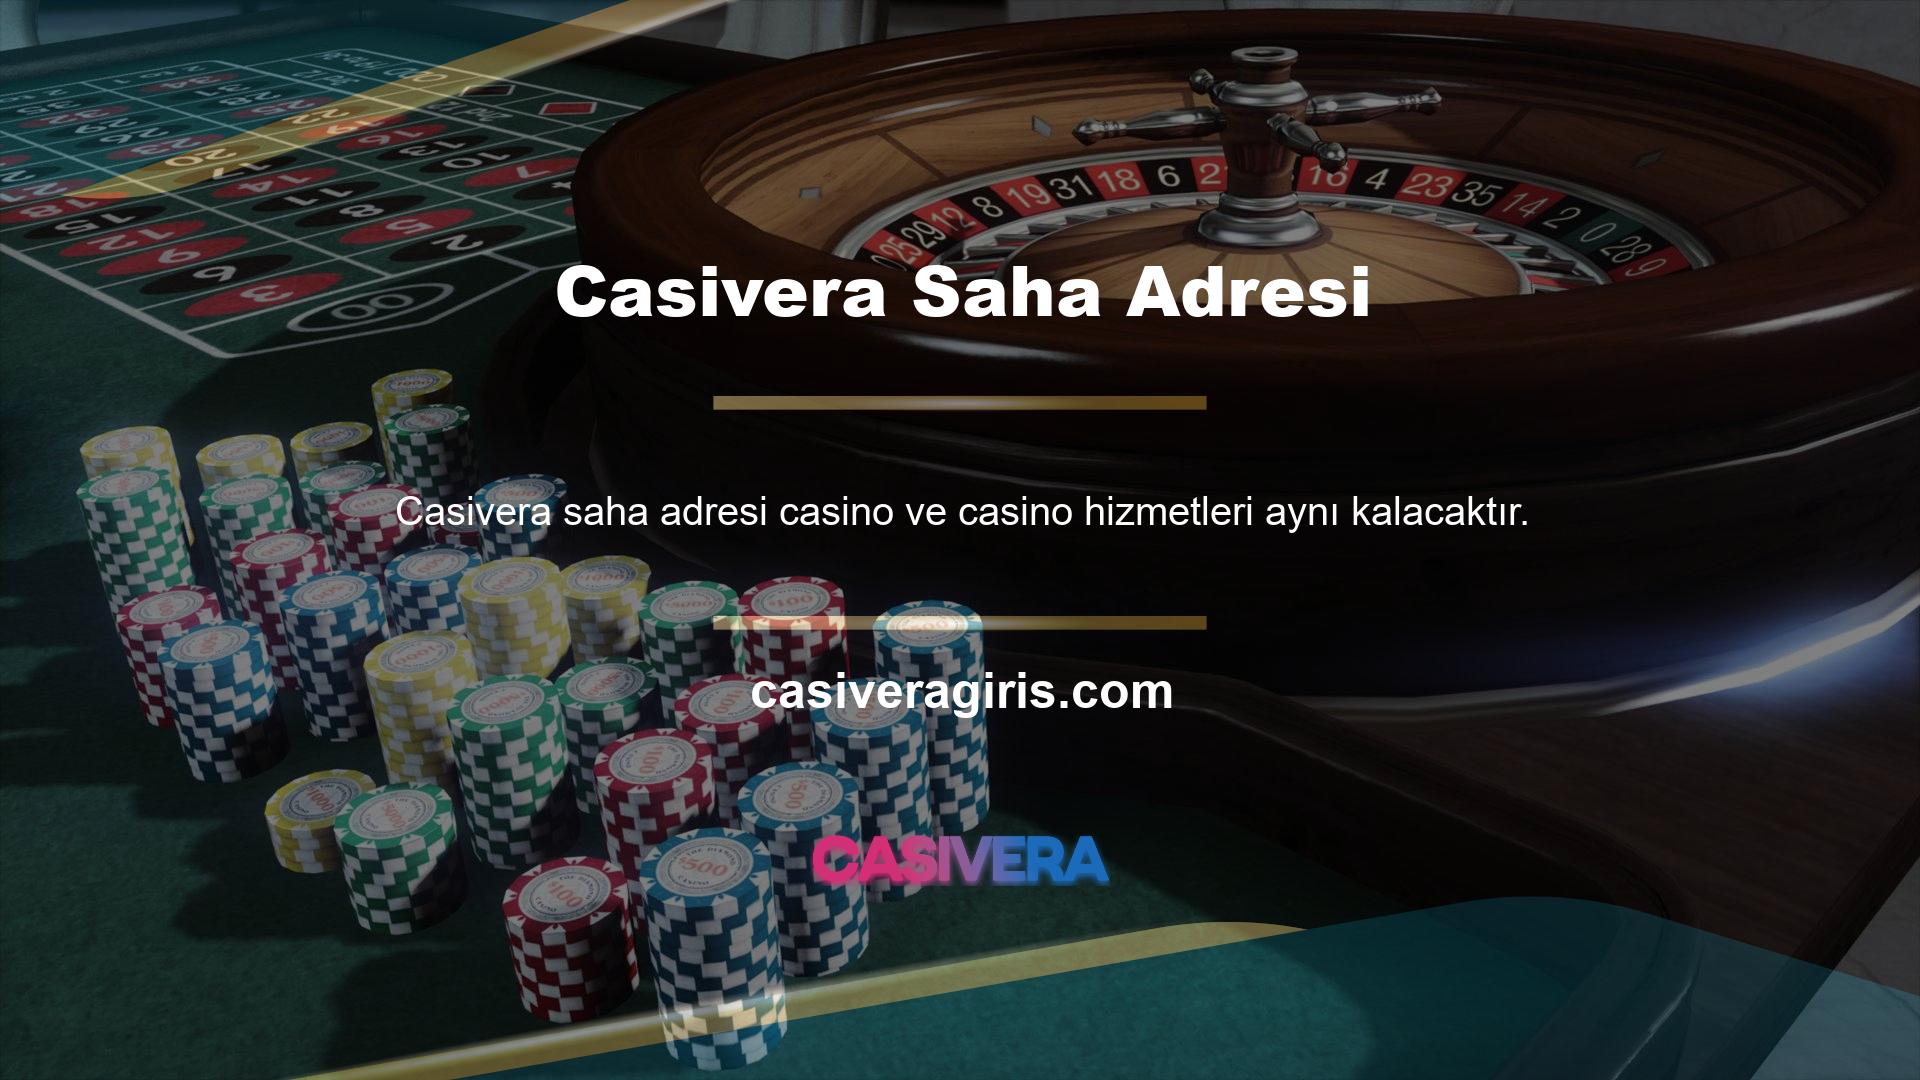 Farklı bahis seçenekleriyle üyelerine farklı şeyler deneyimleme şansı veren site, casino oyun seçenekleriyle de adından söz ettiriyor